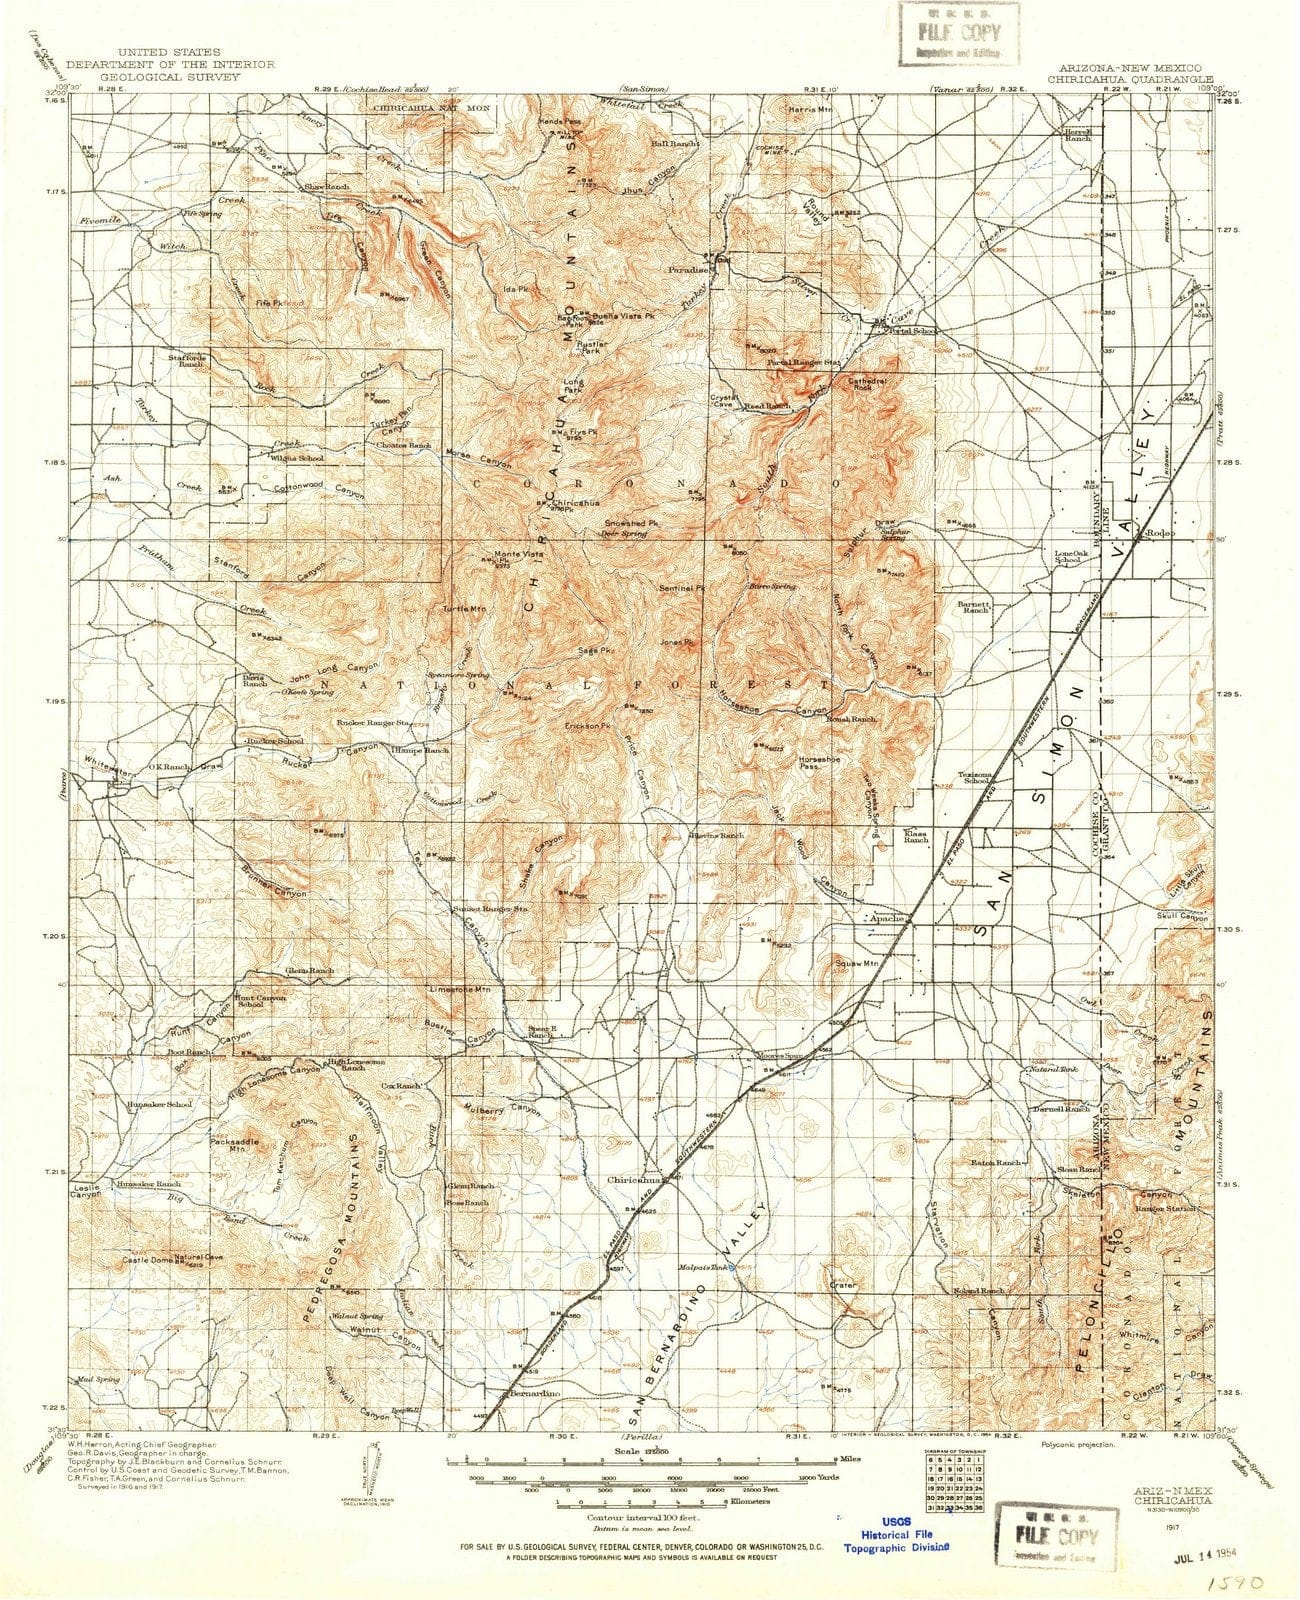 1917 Chiricahua, AZ - Arizona - USGS Topographic Map